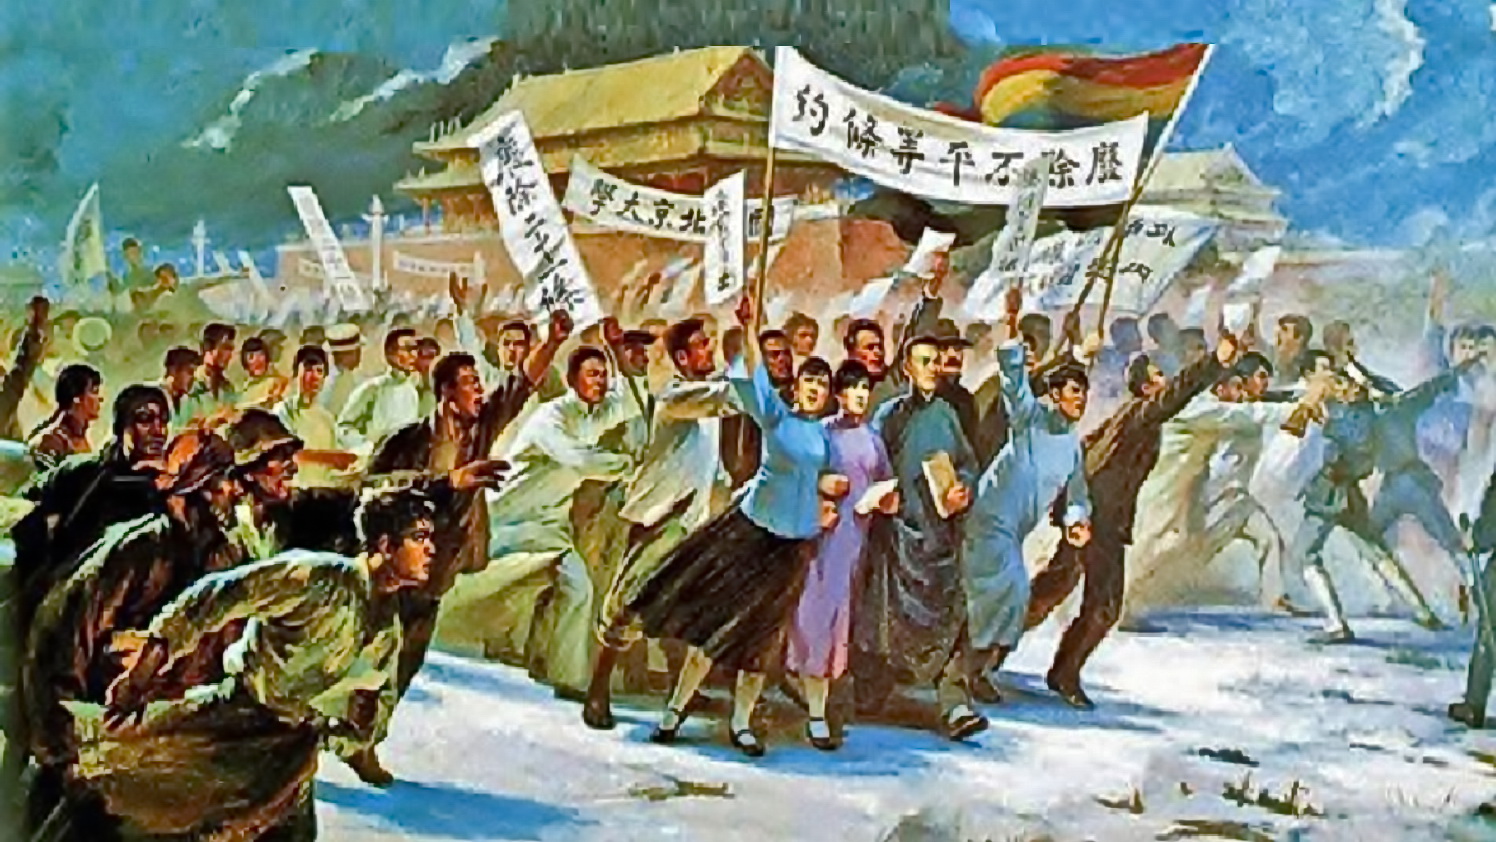 Первая национальная революция. Движение «4 мая» 1919 г. в Китае. 4 Мая 1919 Китай. Движение 4 мая в Китае. Китайская революция 1911.